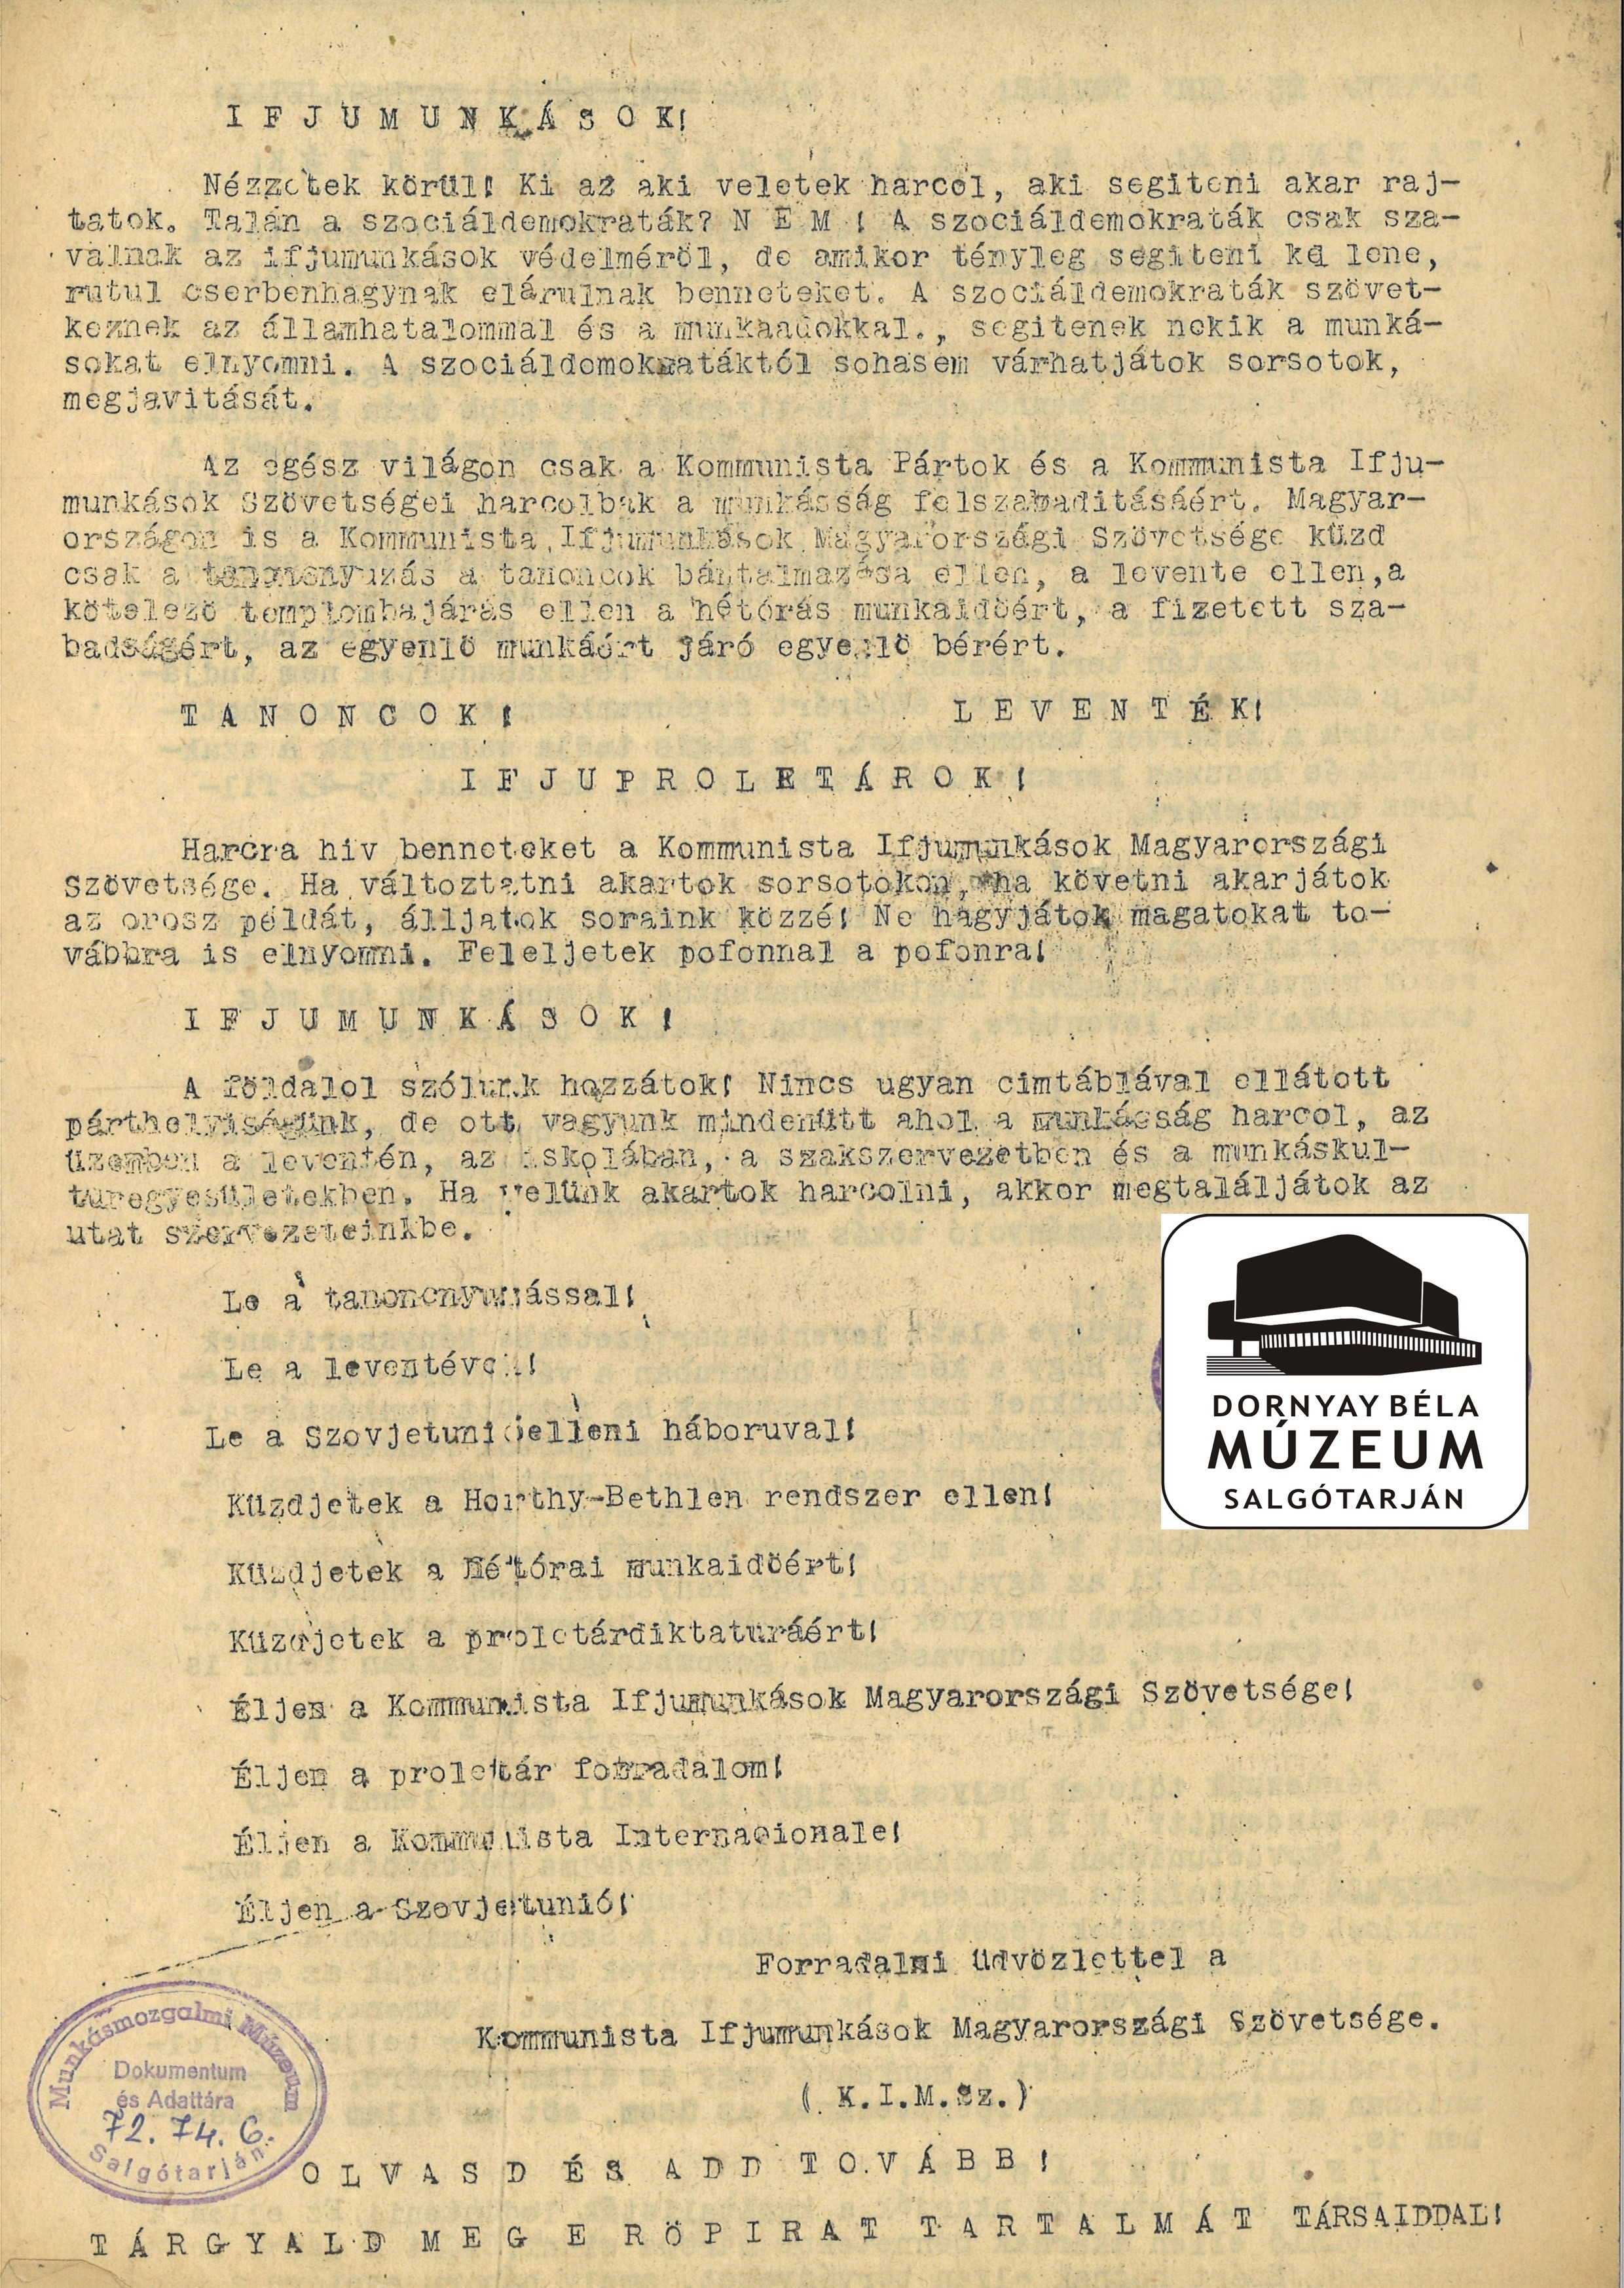 A KIMSZ felhívása a tanoncokhoz, munkásifjakhoz, leventékhez (Dornyay Béla Múzeum, Salgótarján CC BY-NC-SA)